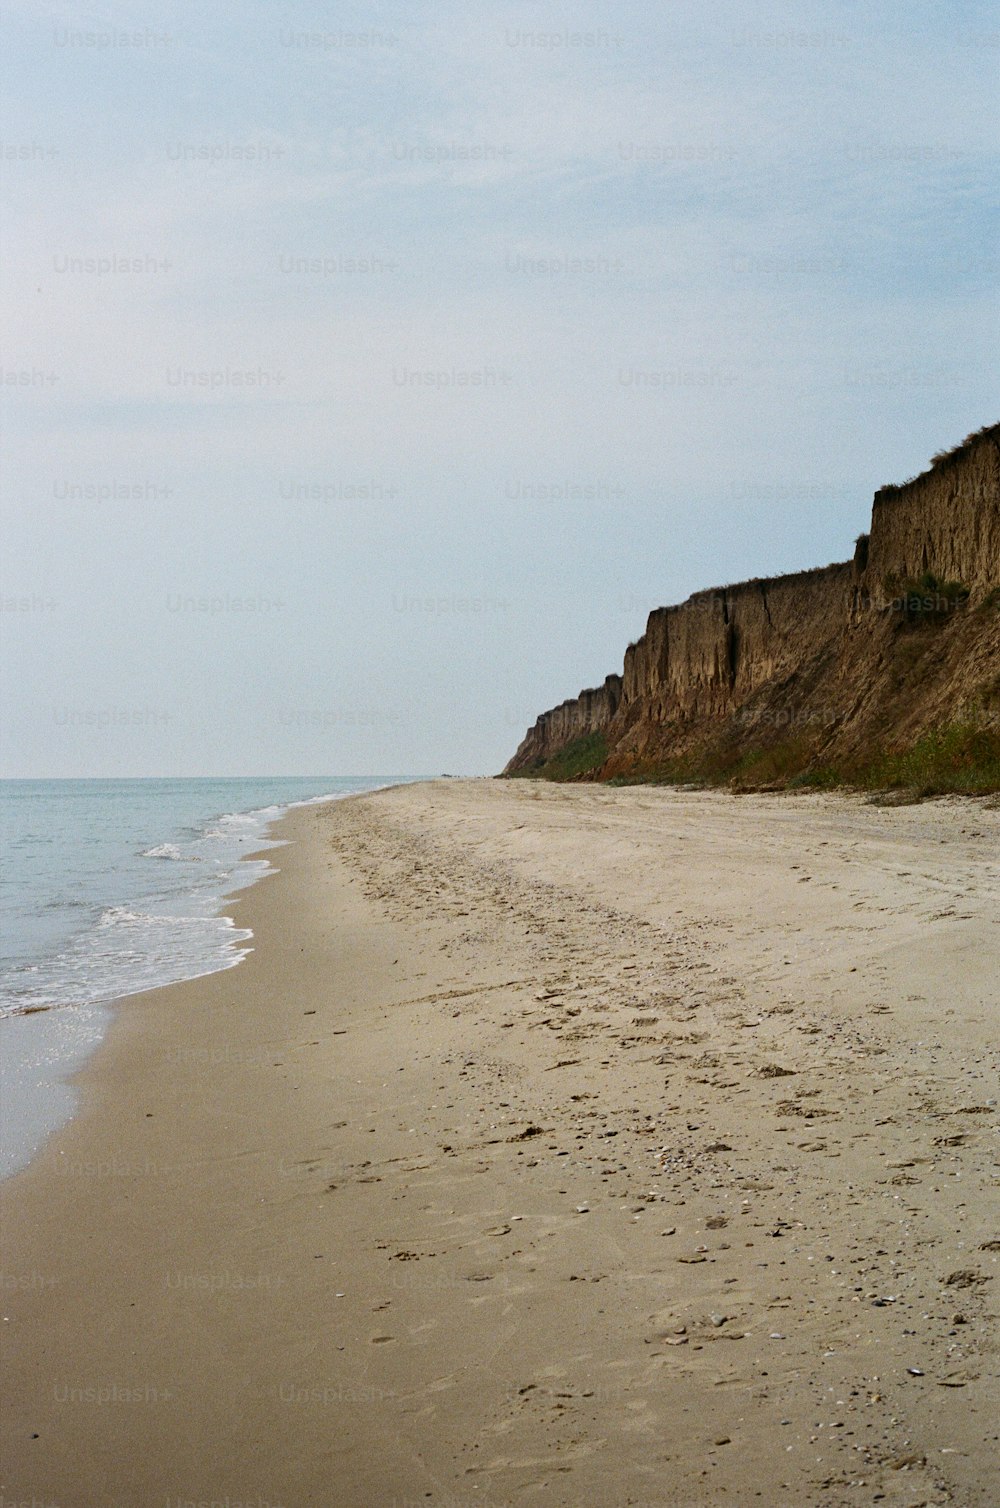 Una playa de arena con un acantilado al fondo